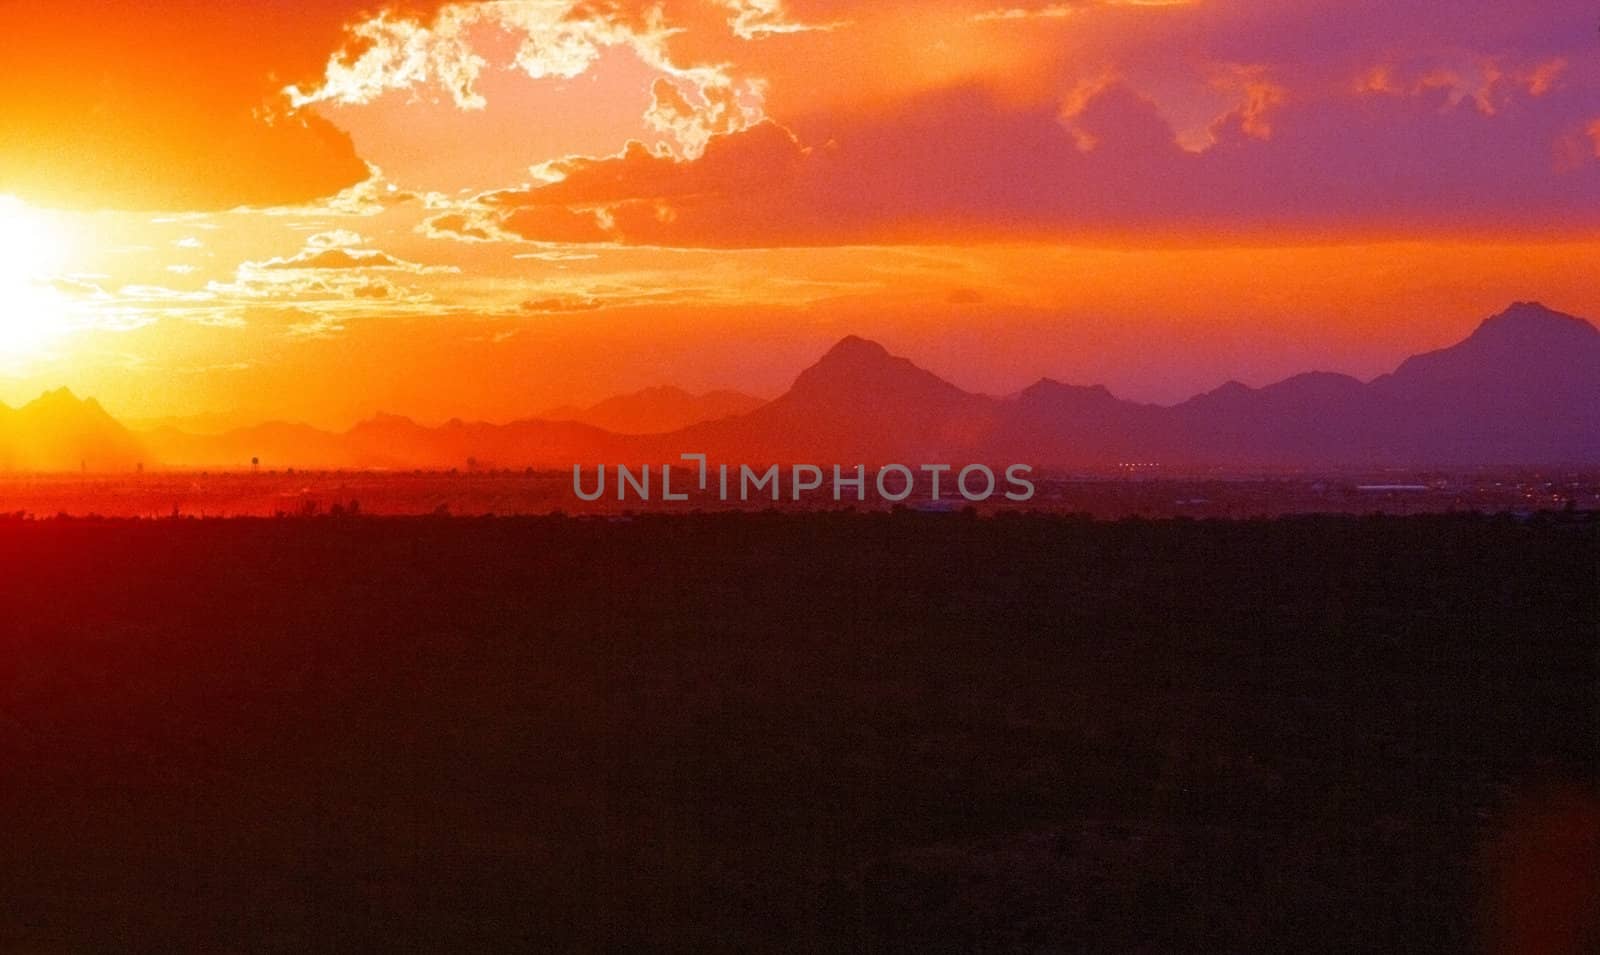 Sunset by Tucson, Arizona